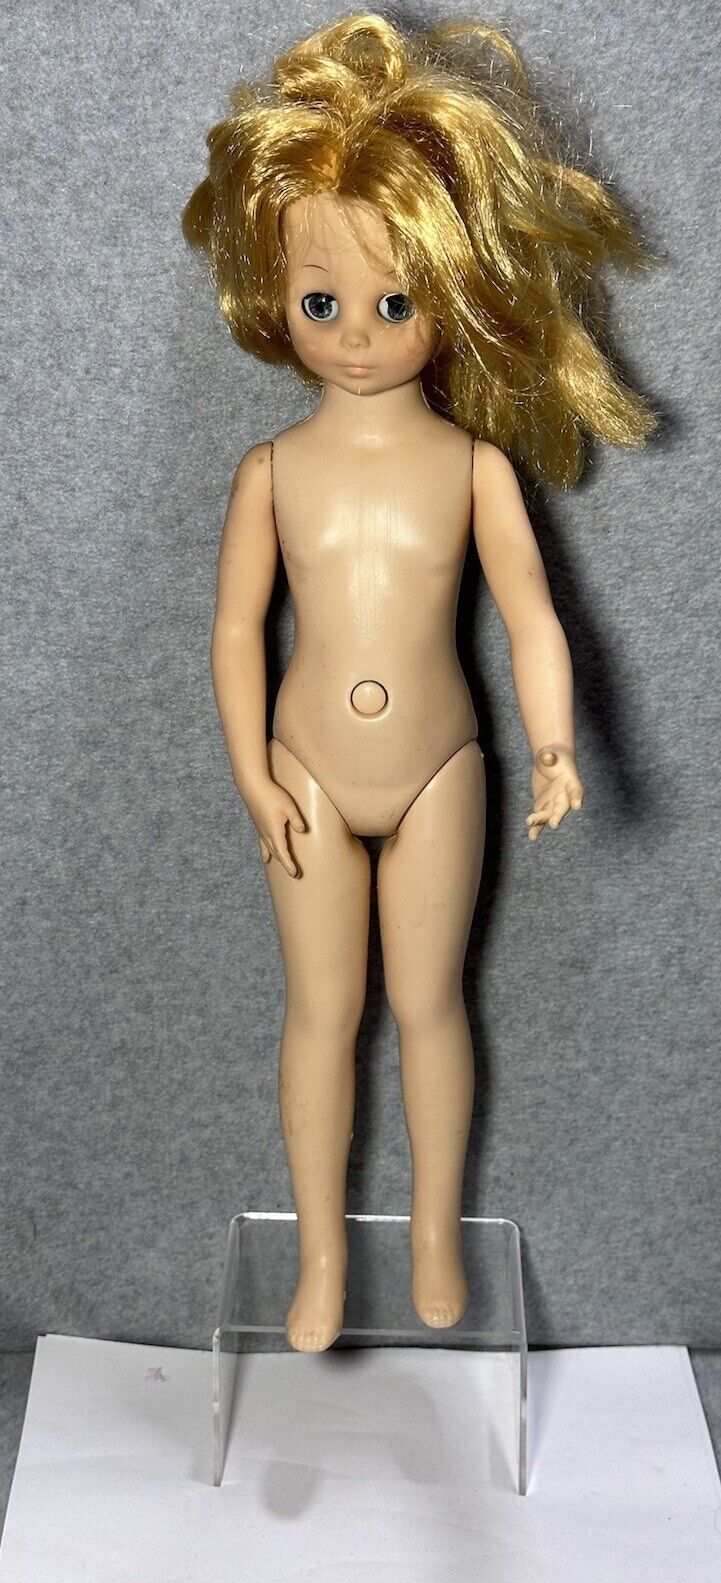 DOLL HORSMAN 1988 Doll Appr 17” VINTAGE 